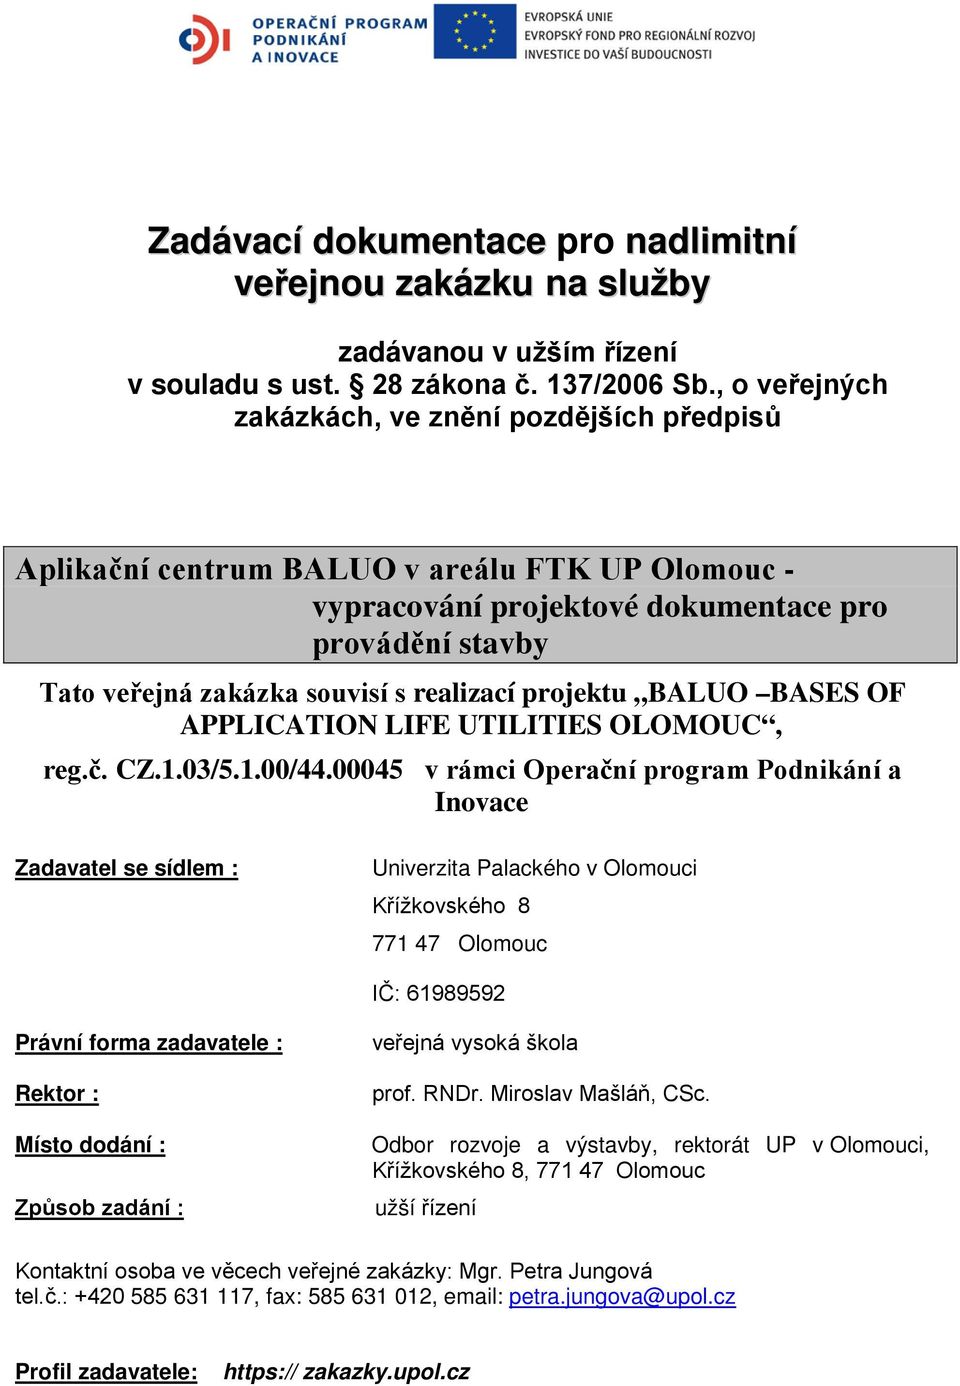 realizací projektu BALUO BASES OF APPLICATION LIFE UTILITIES OLOMOUC, reg.č. CZ.1.03/5.1.00/44.